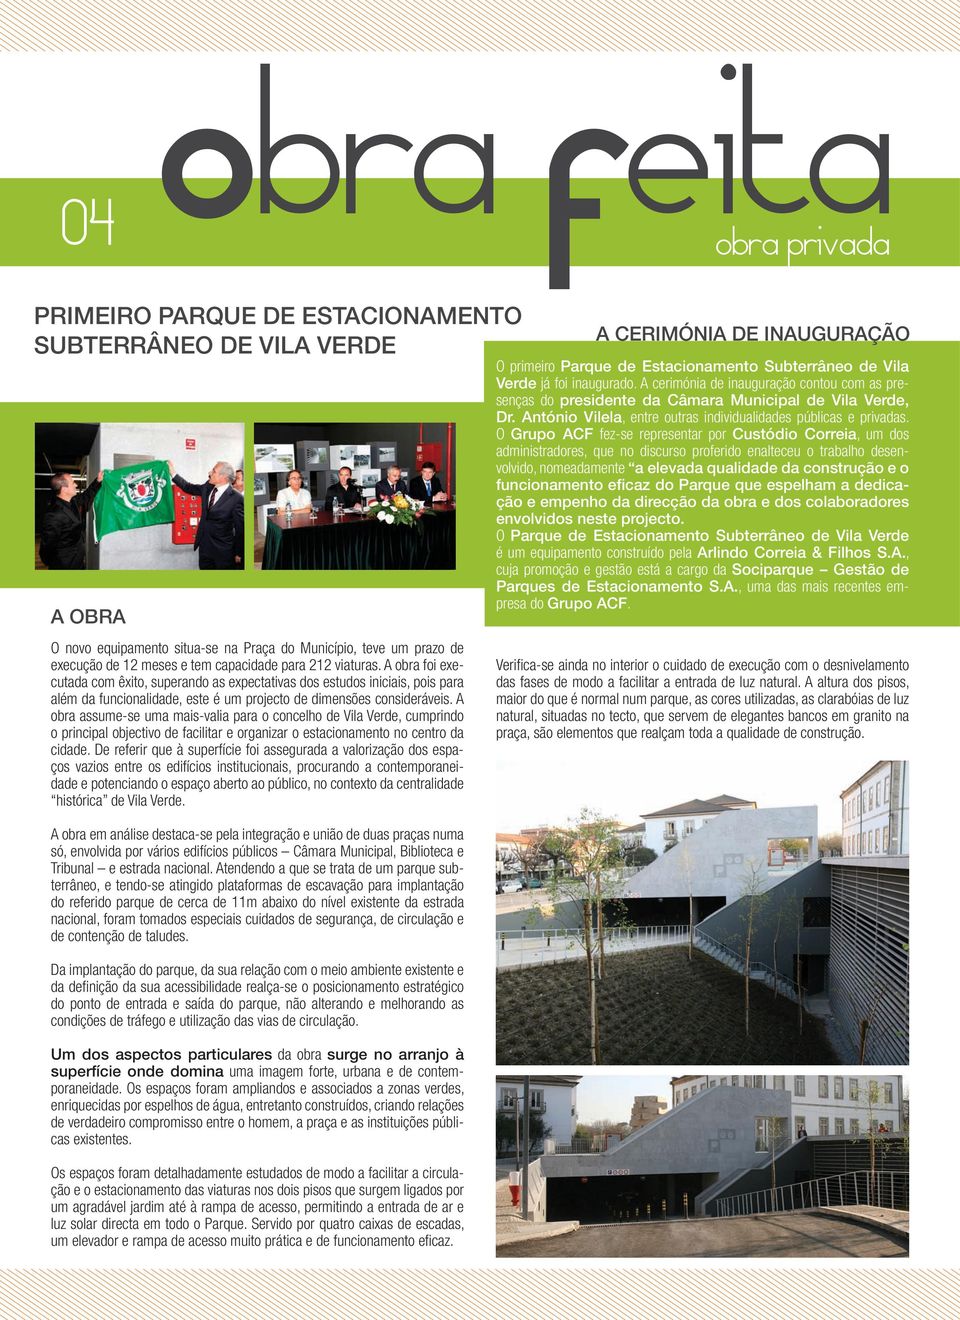 A obra assume-se uma mais-valia para o concelho de Vila Verde, cumprindo o principal objectivo de facilitar e organizar o estacionamento no centro da cidade.